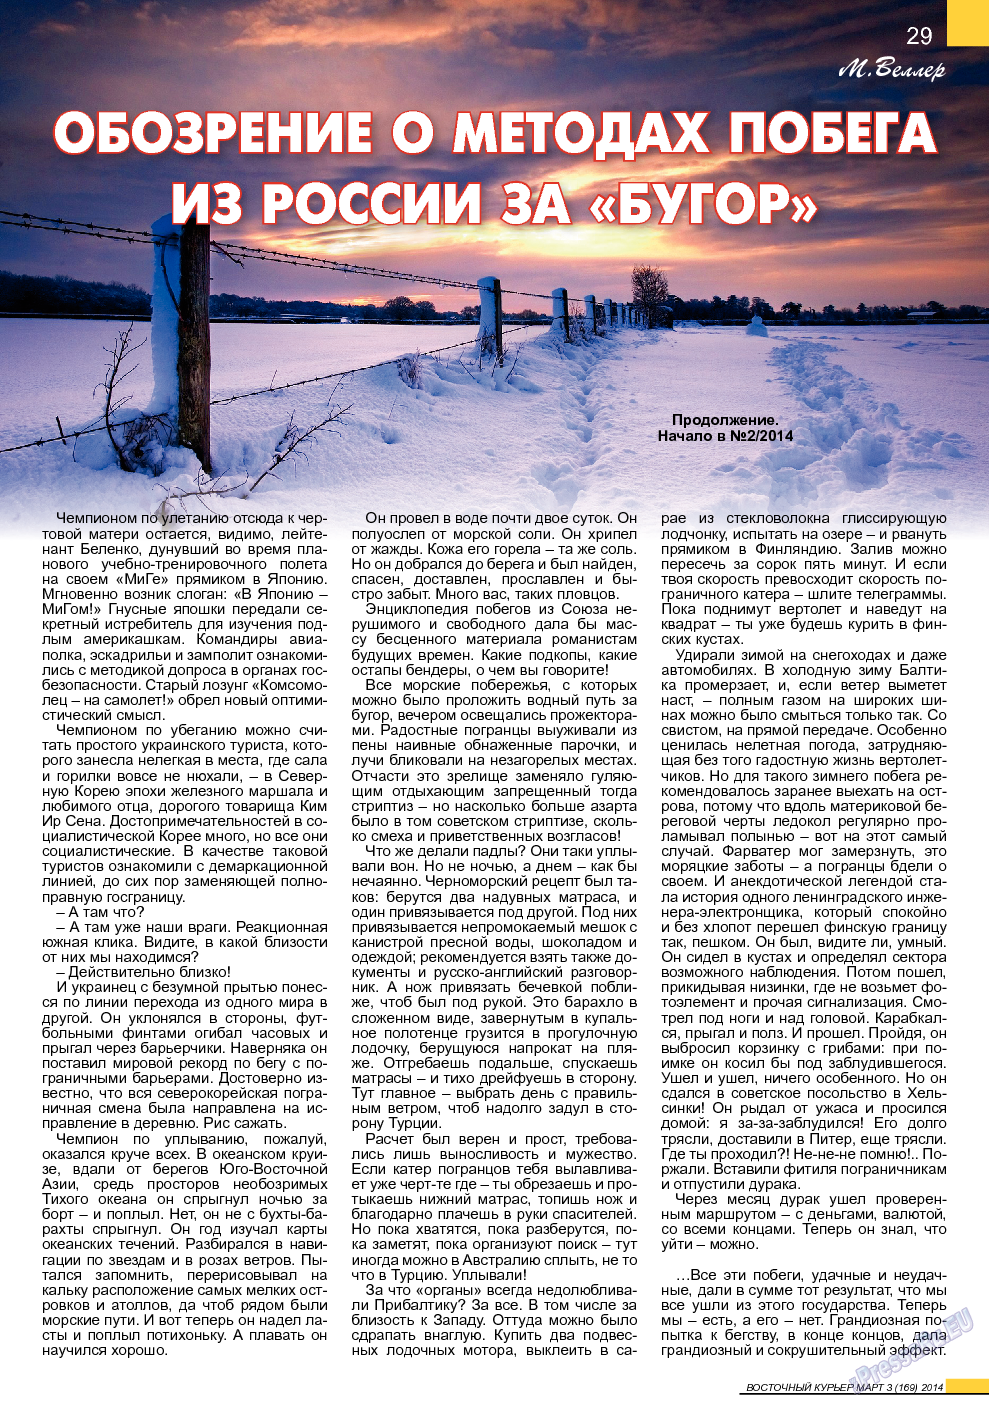 Восточный курьер, журнал. 2014 №3 стр.29